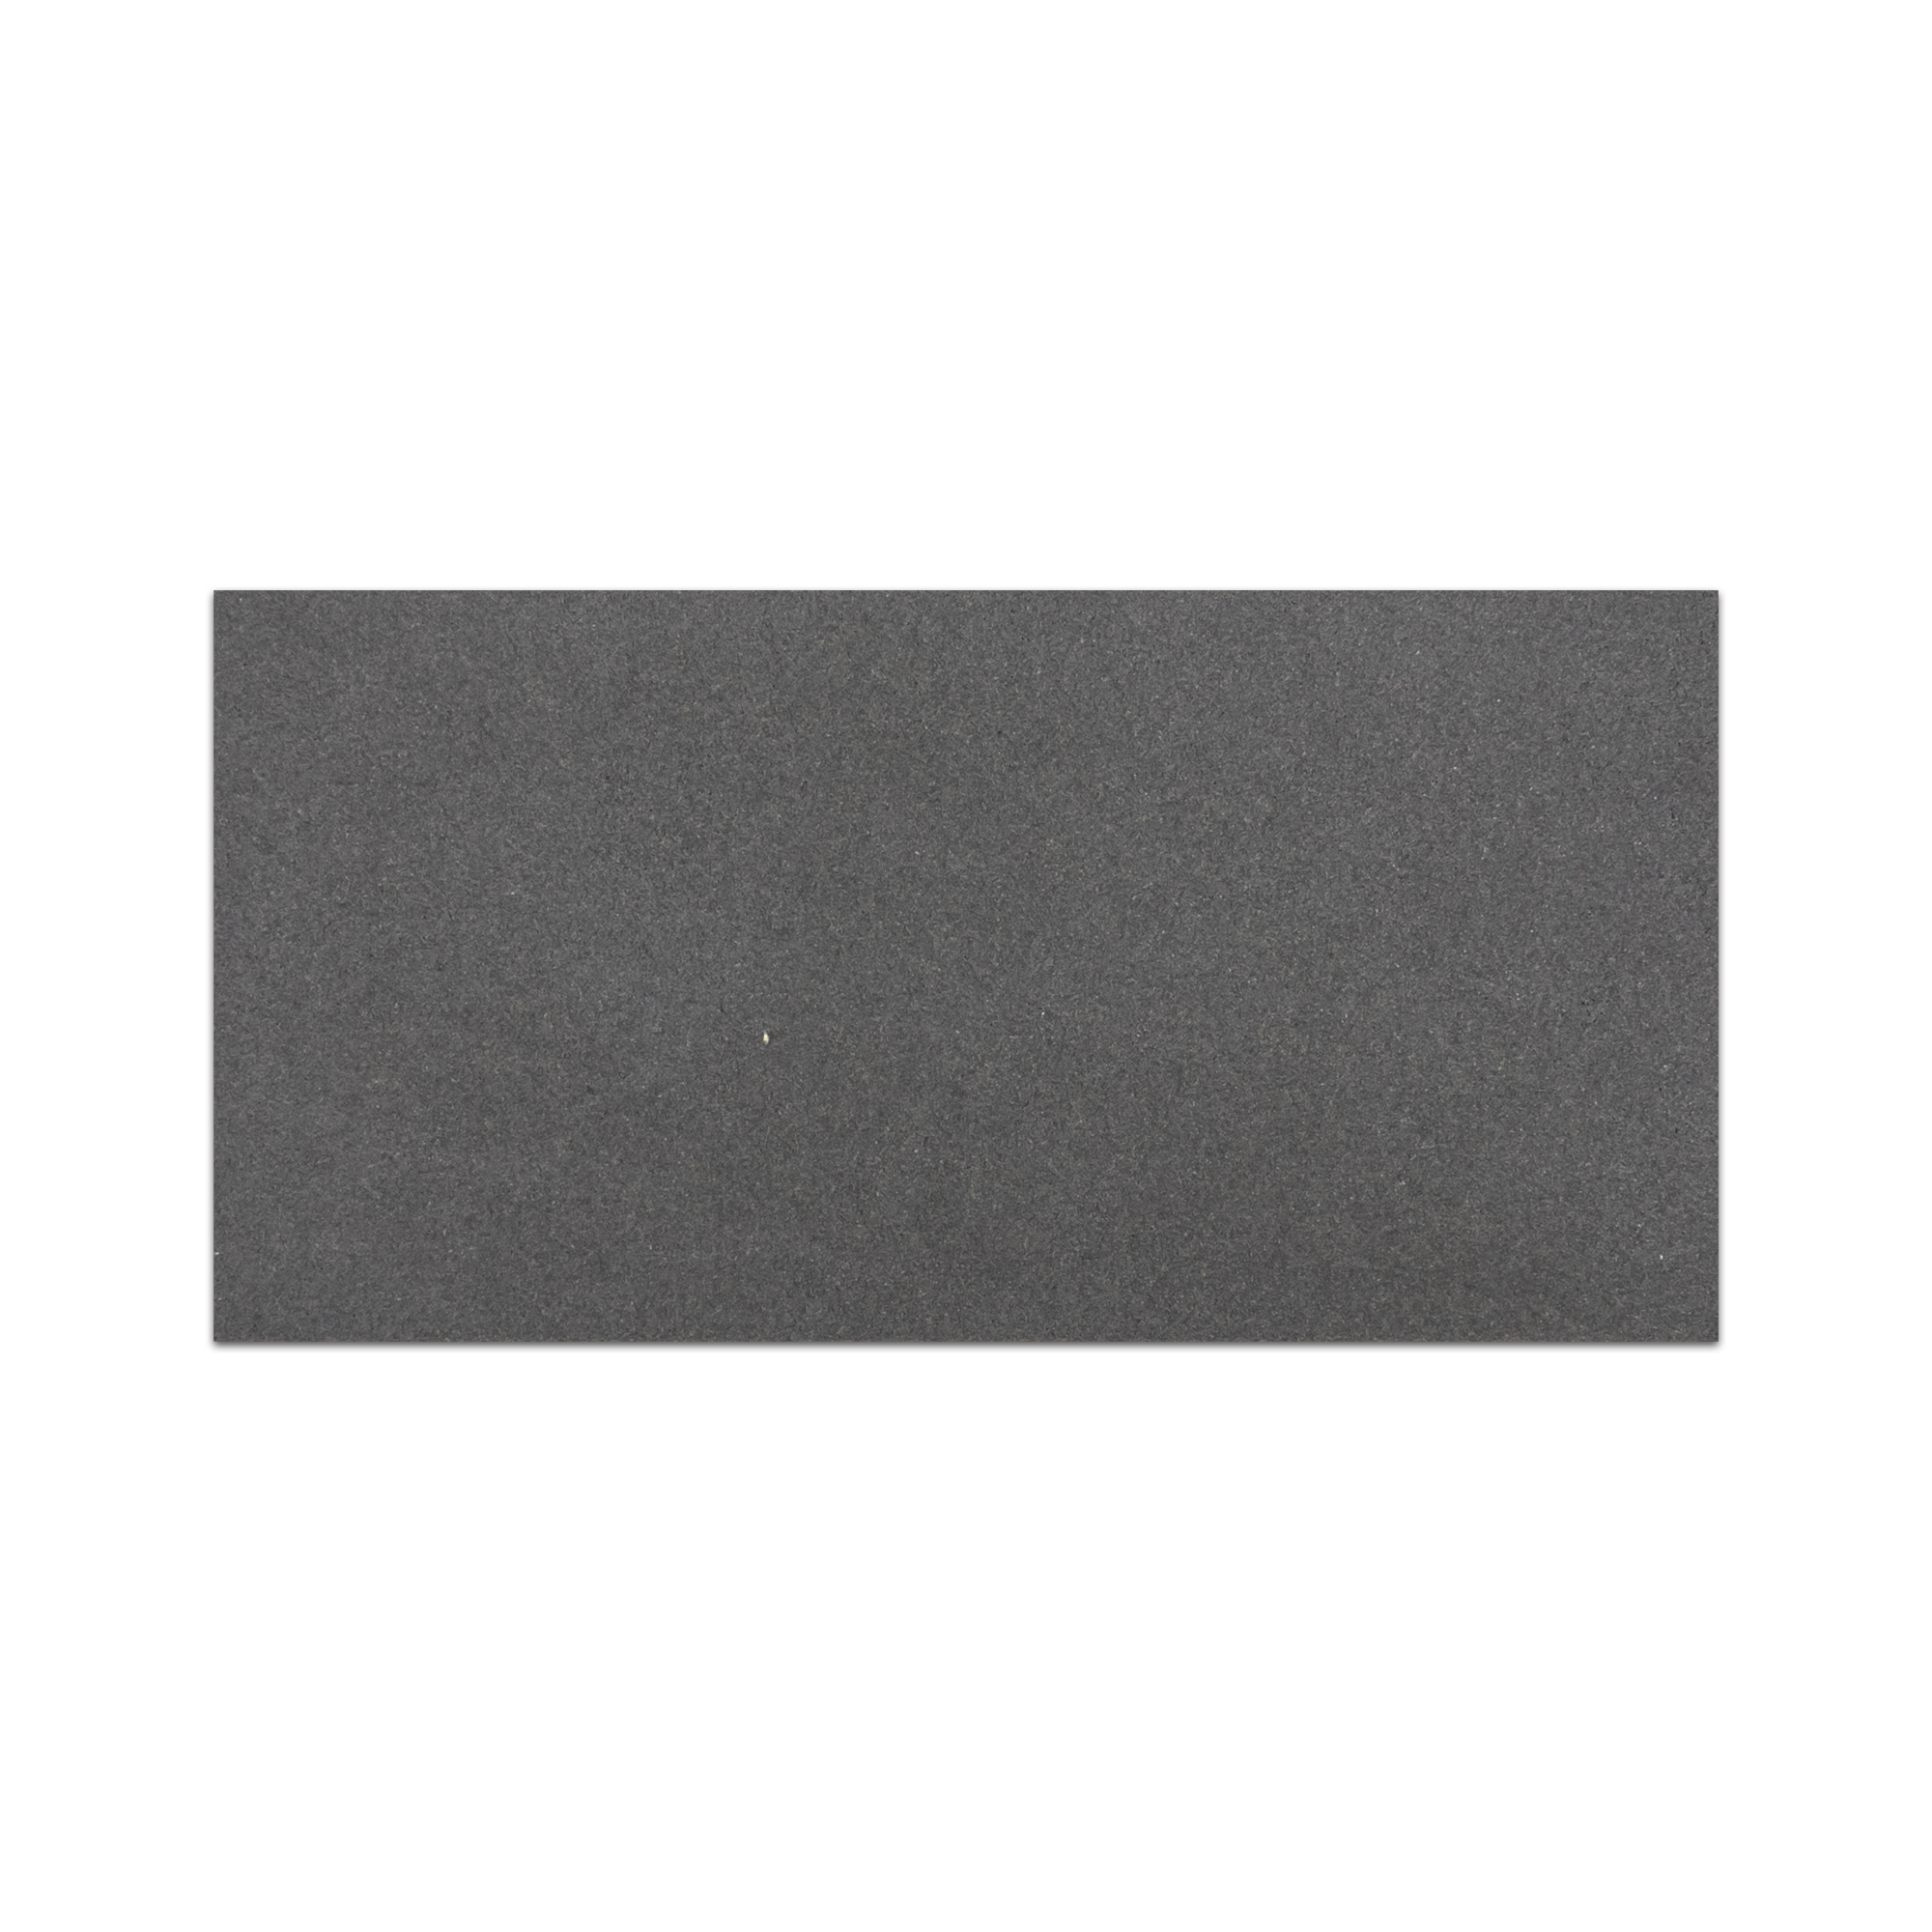 Elon grey basalt rectangle field tile 6x12x0.375 honed VT0612H - Surface Group International